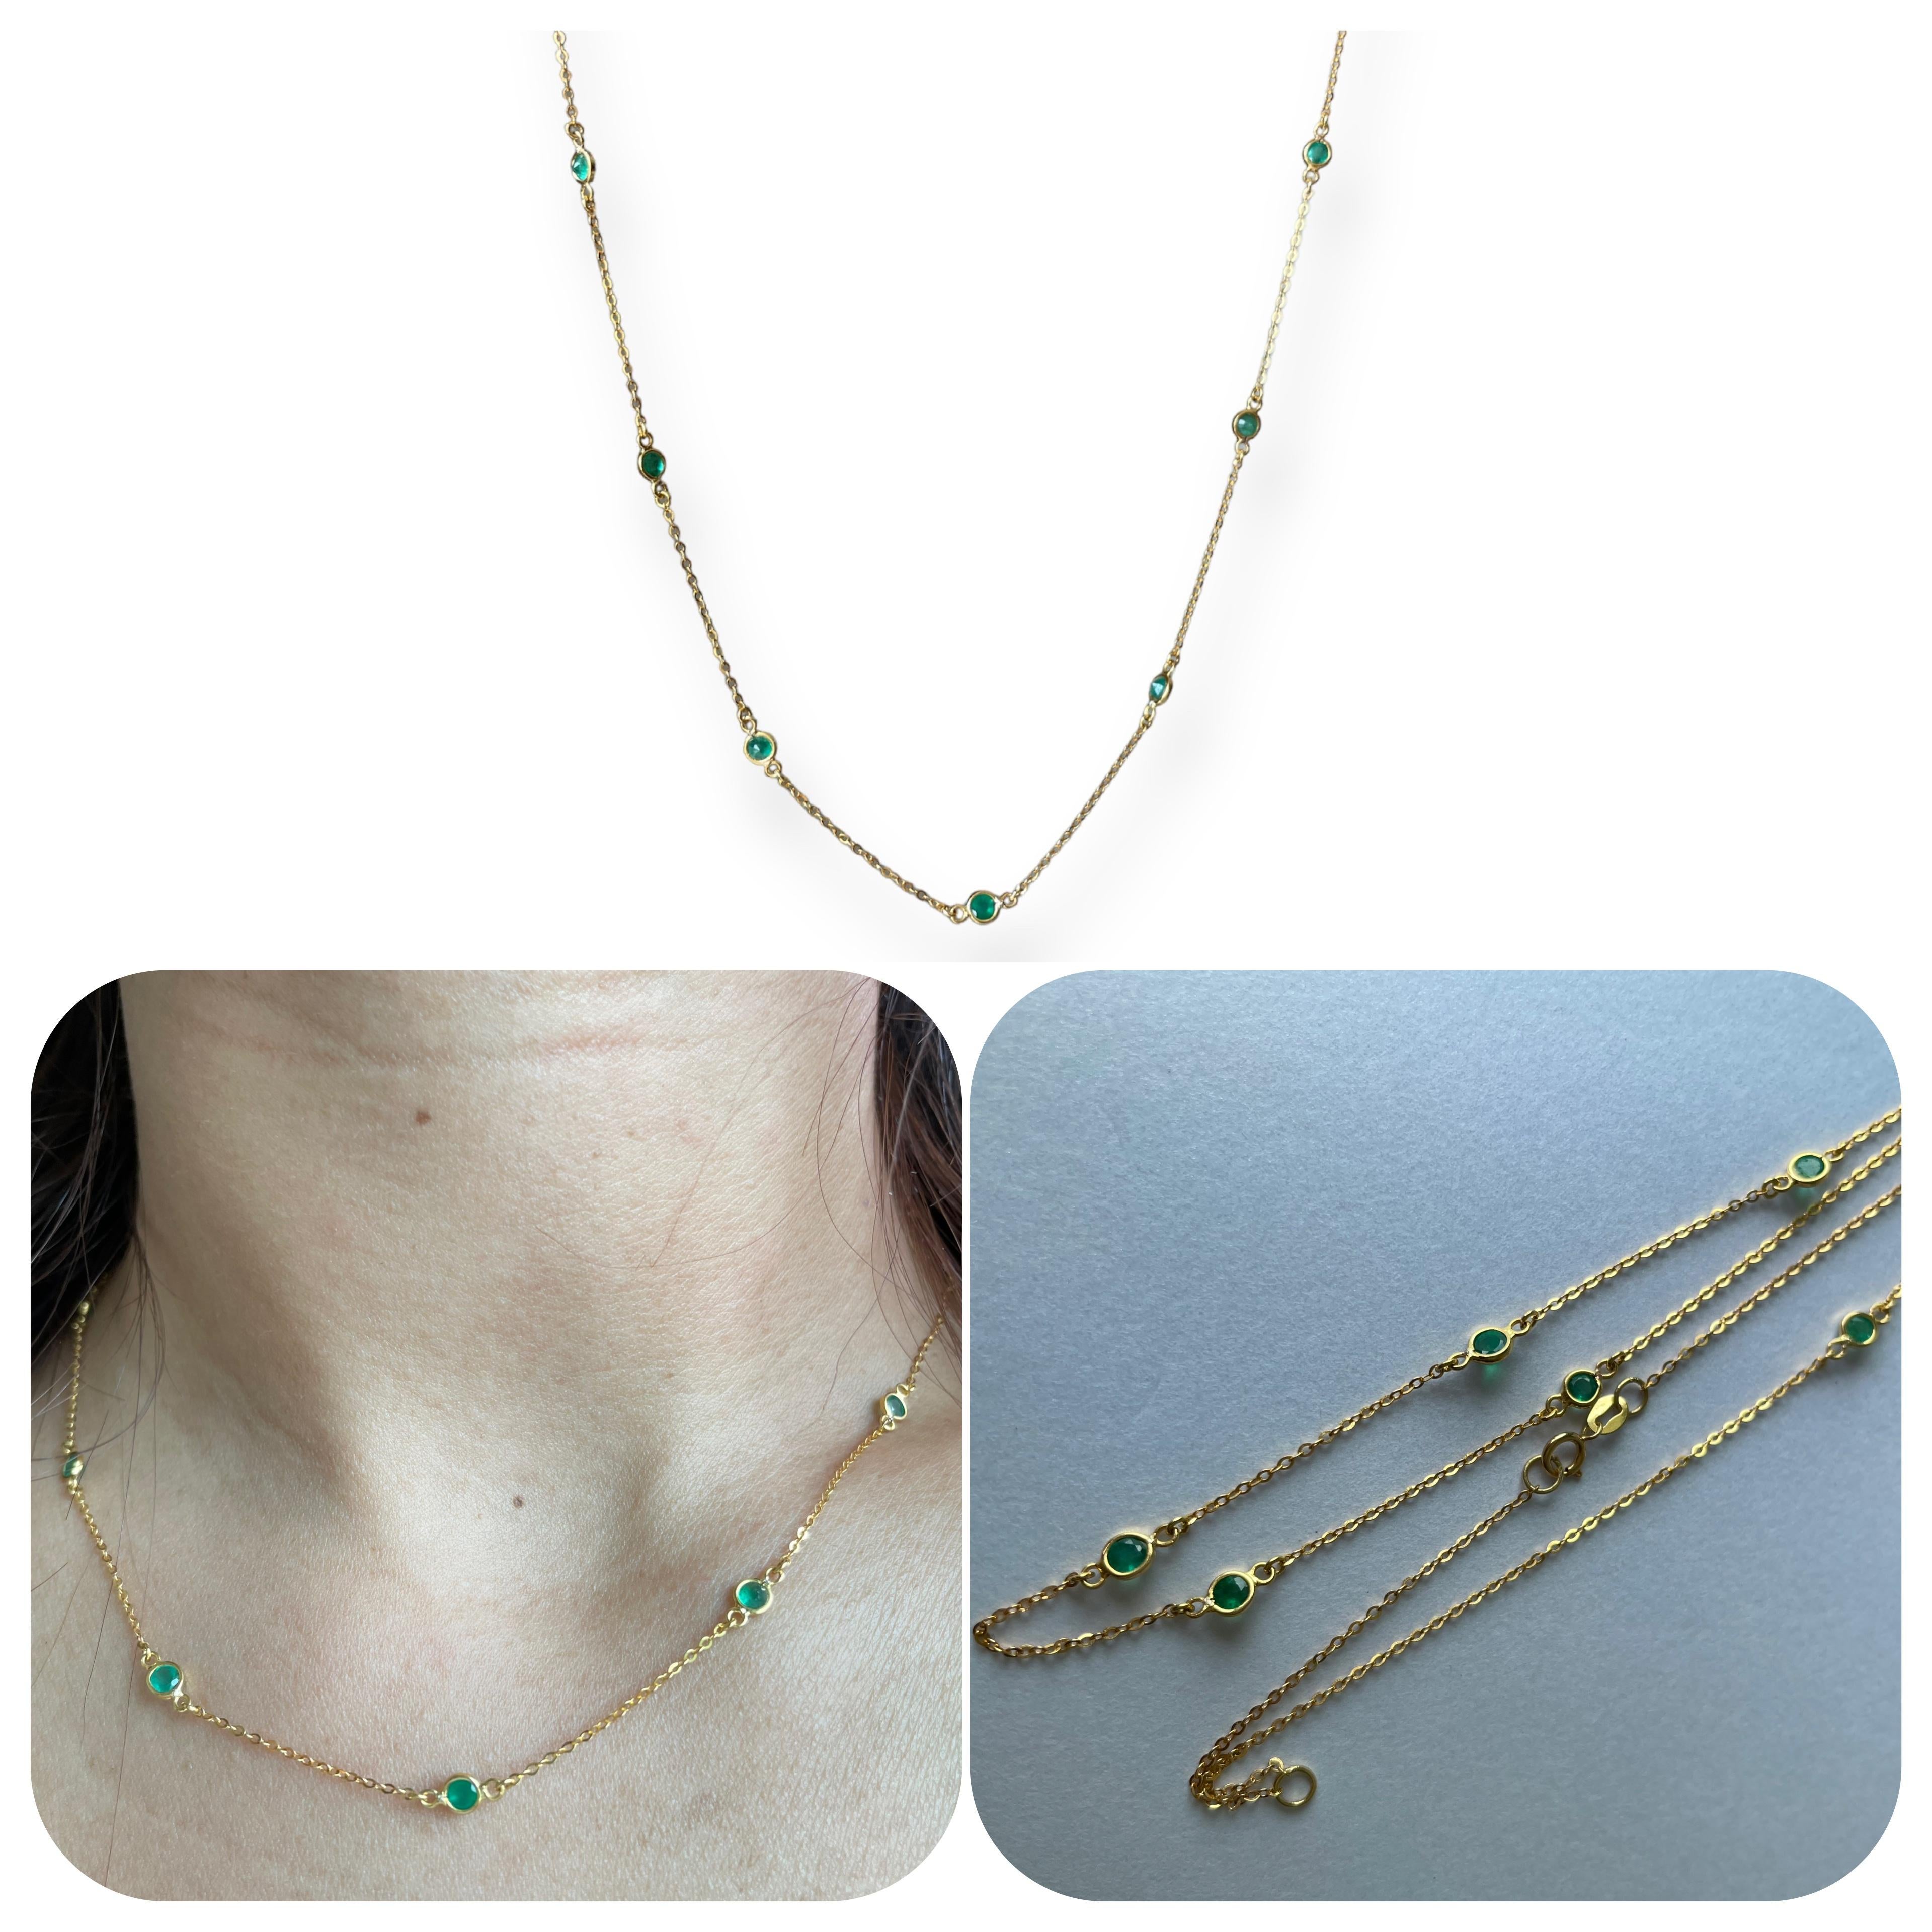 Dieses schlichte, minimalistische Design umfasst 7 natürliche Smaragde, die an einer zierlichen Kette um den Hals schweben. Das Wichtigste ist, dass jeder einzelne Stein ein natürlicher Smaragd ist, der in der Erde abgebaut wurde. Die Länge ist